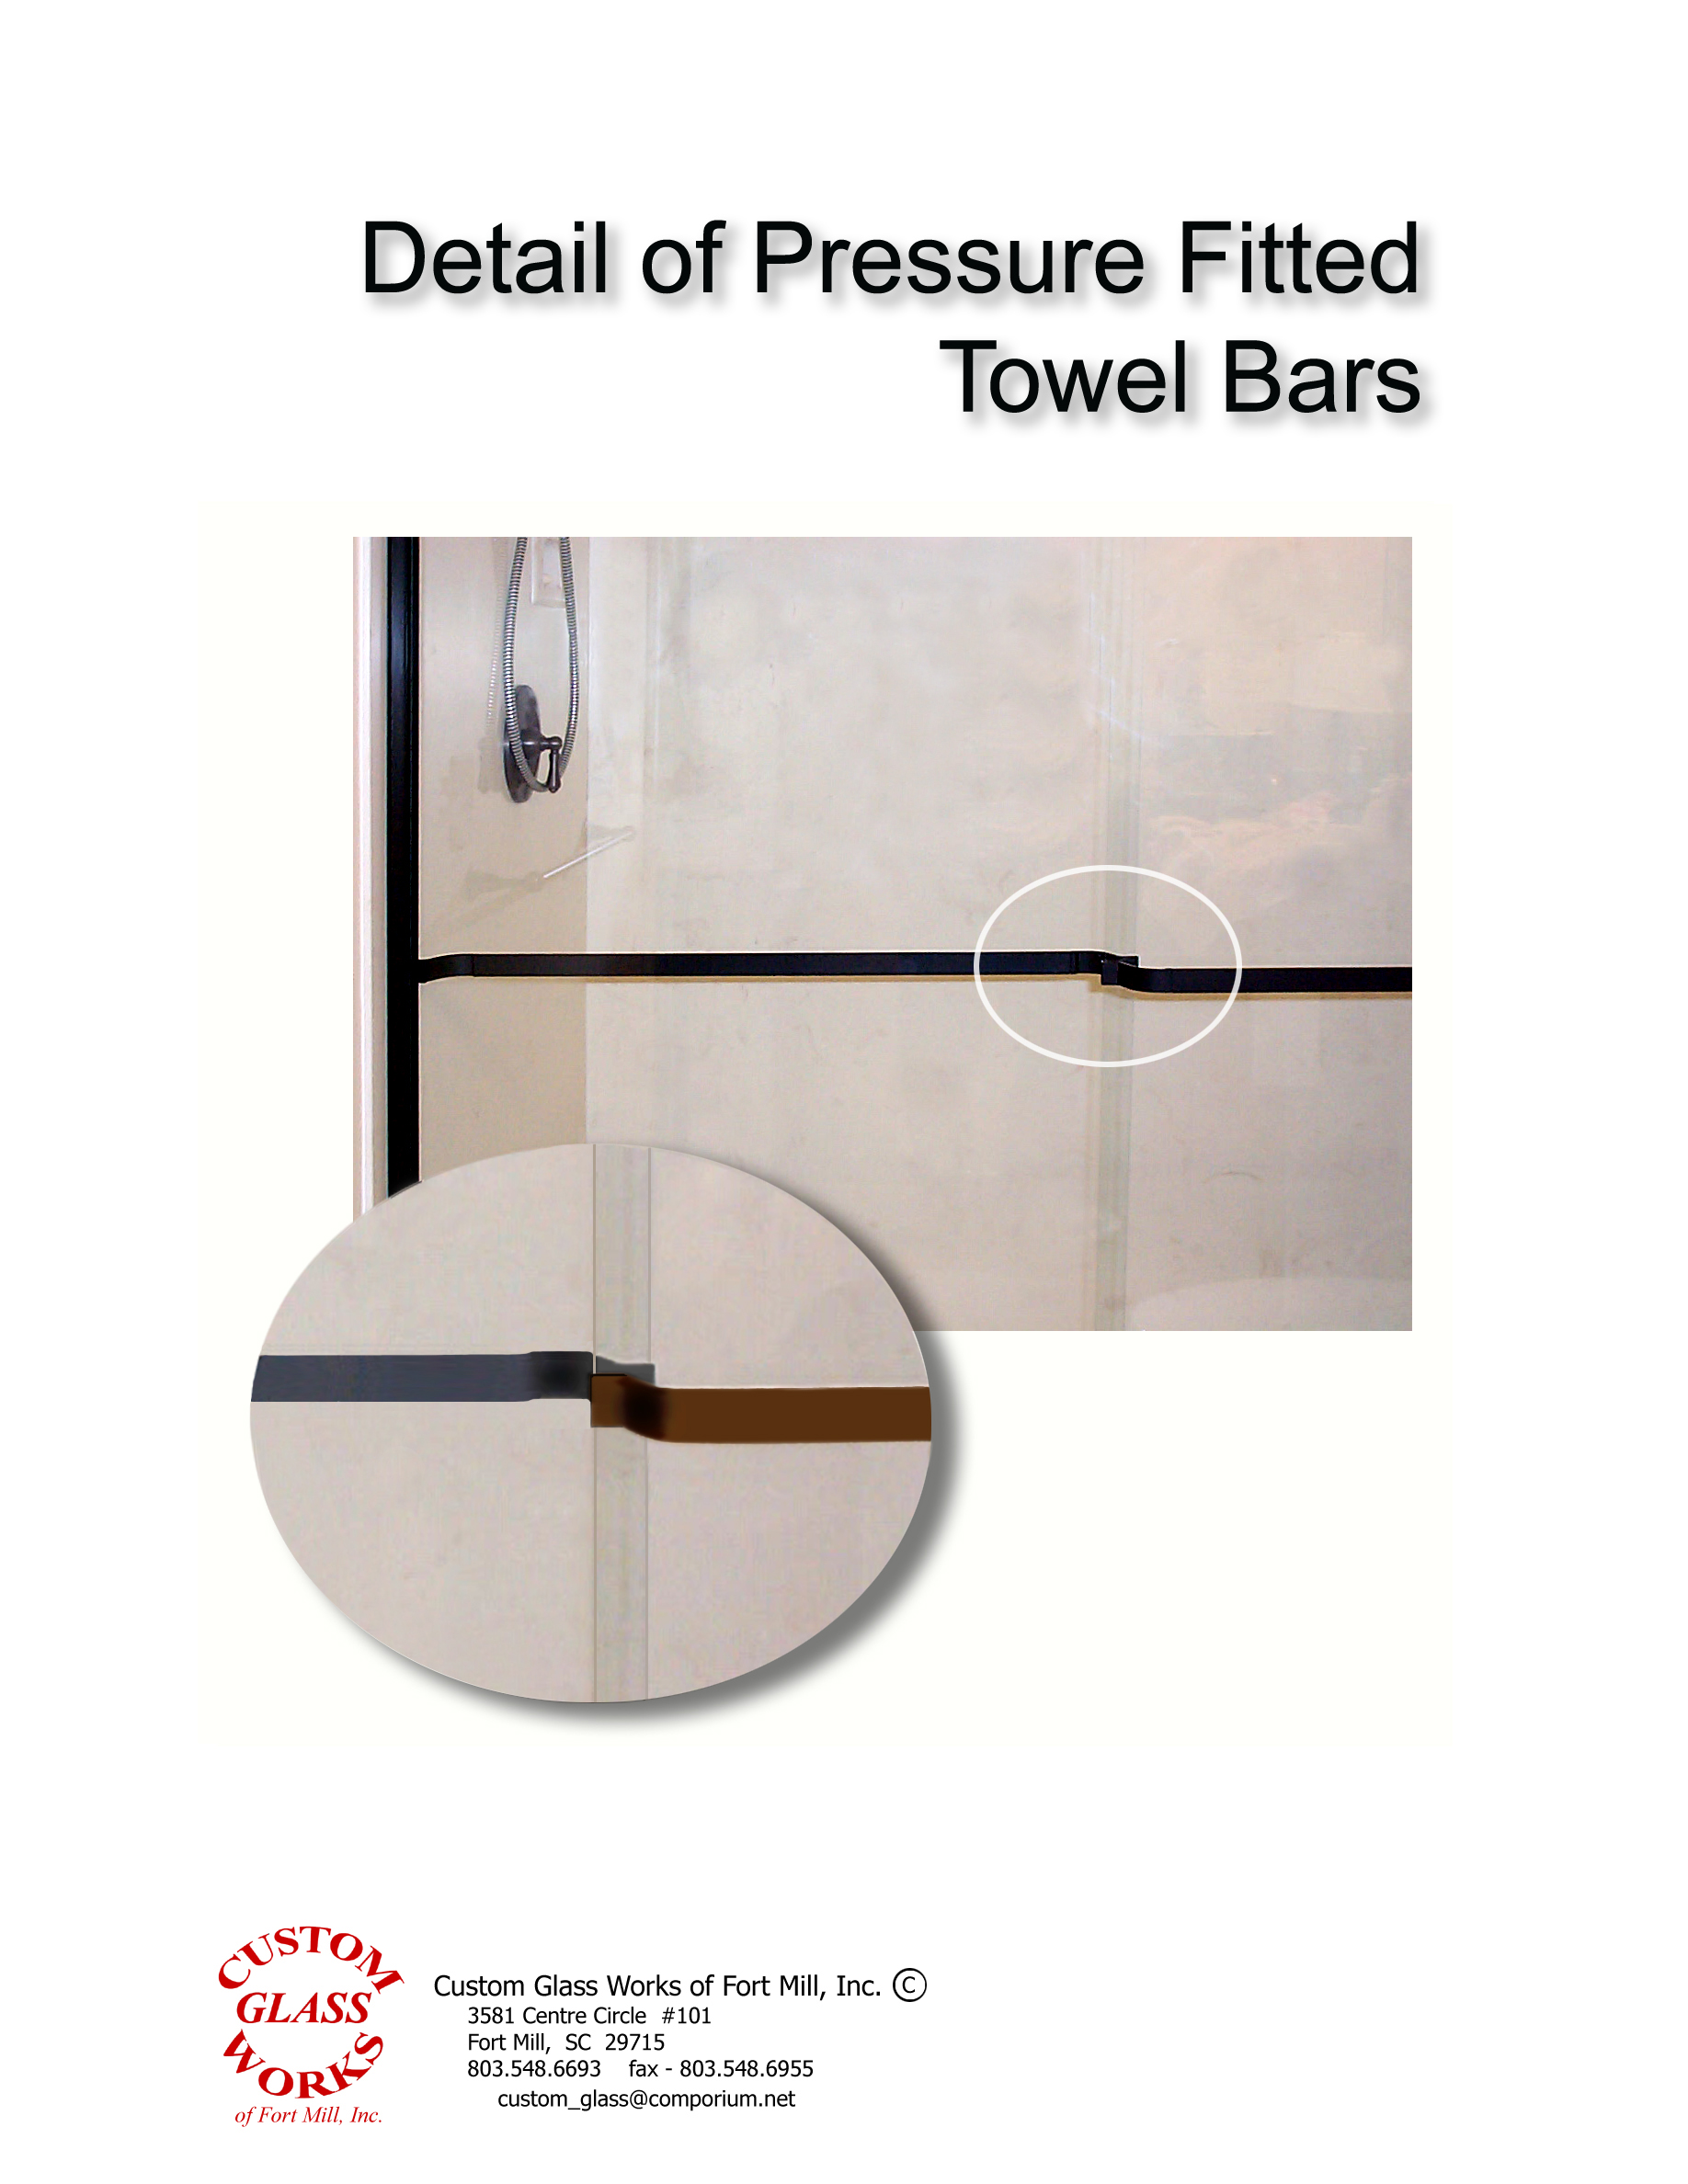 Detail of pressure towel bars